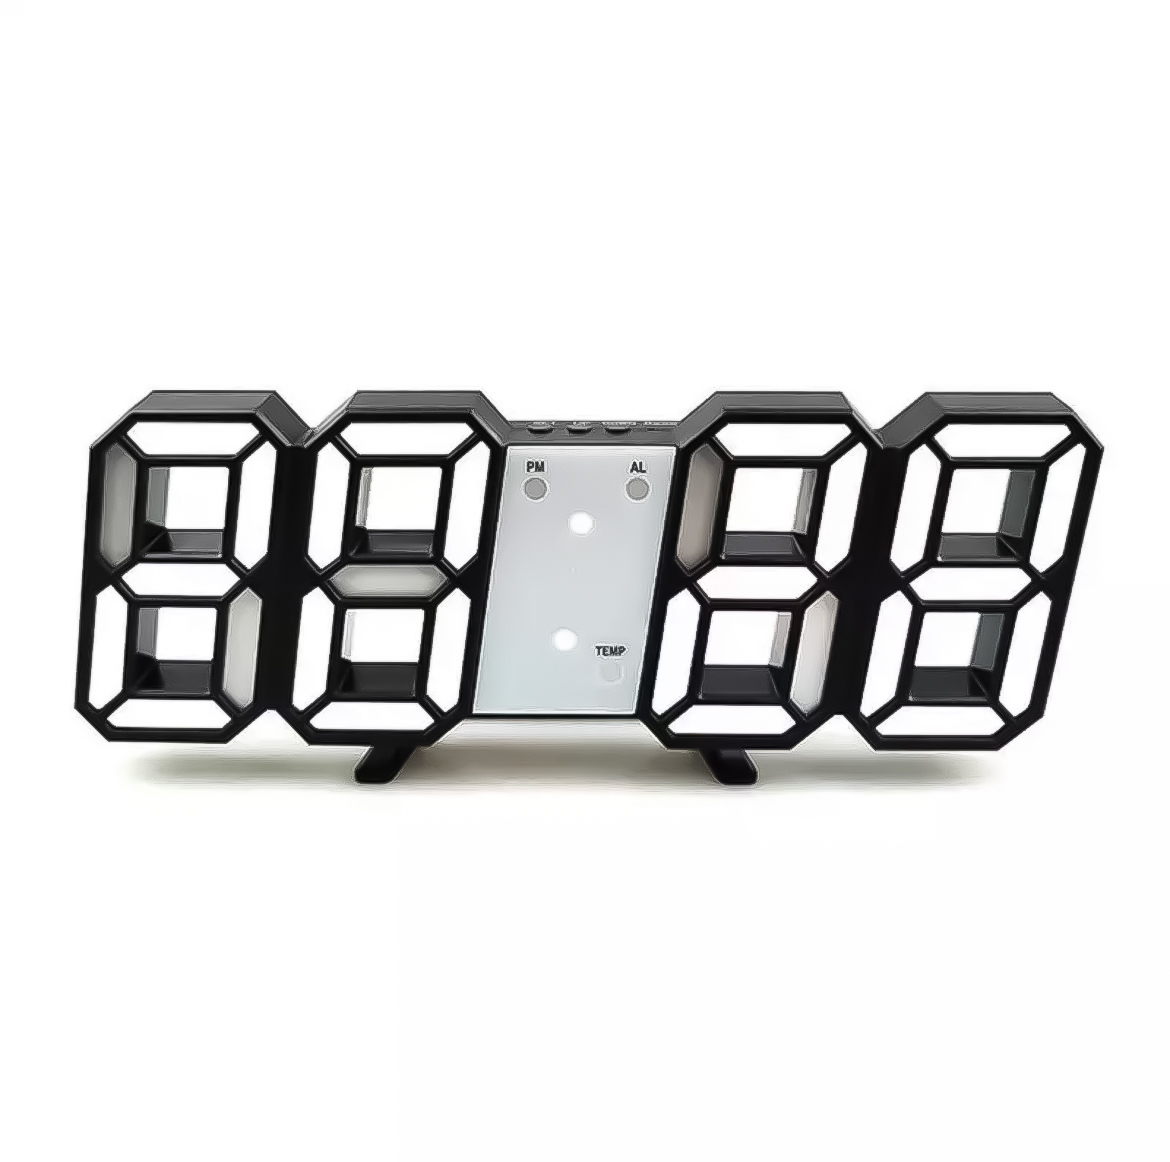 3D立体時計 ブラック LED壁掛け時計 置き時計 両用 デジタル時計 インスタ映え 置き型 LED デジタル アラーム付 目覚まし時計☆の画像1